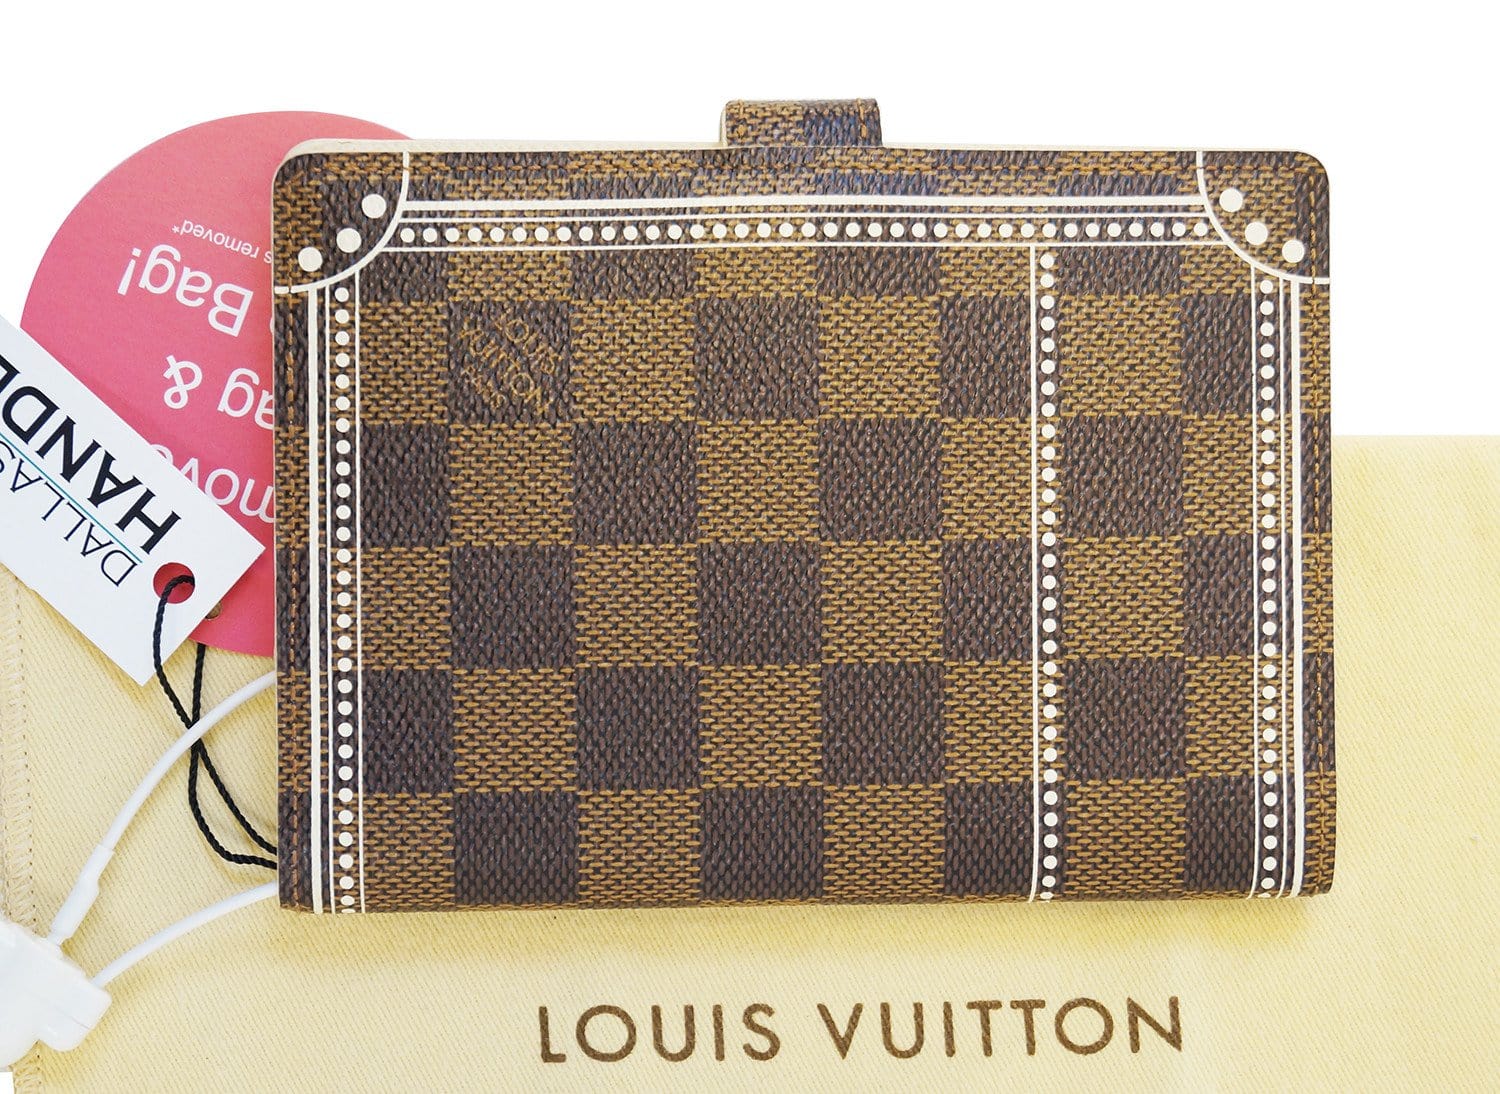 Louis Vuitton Agenda Size Comparison Shopping